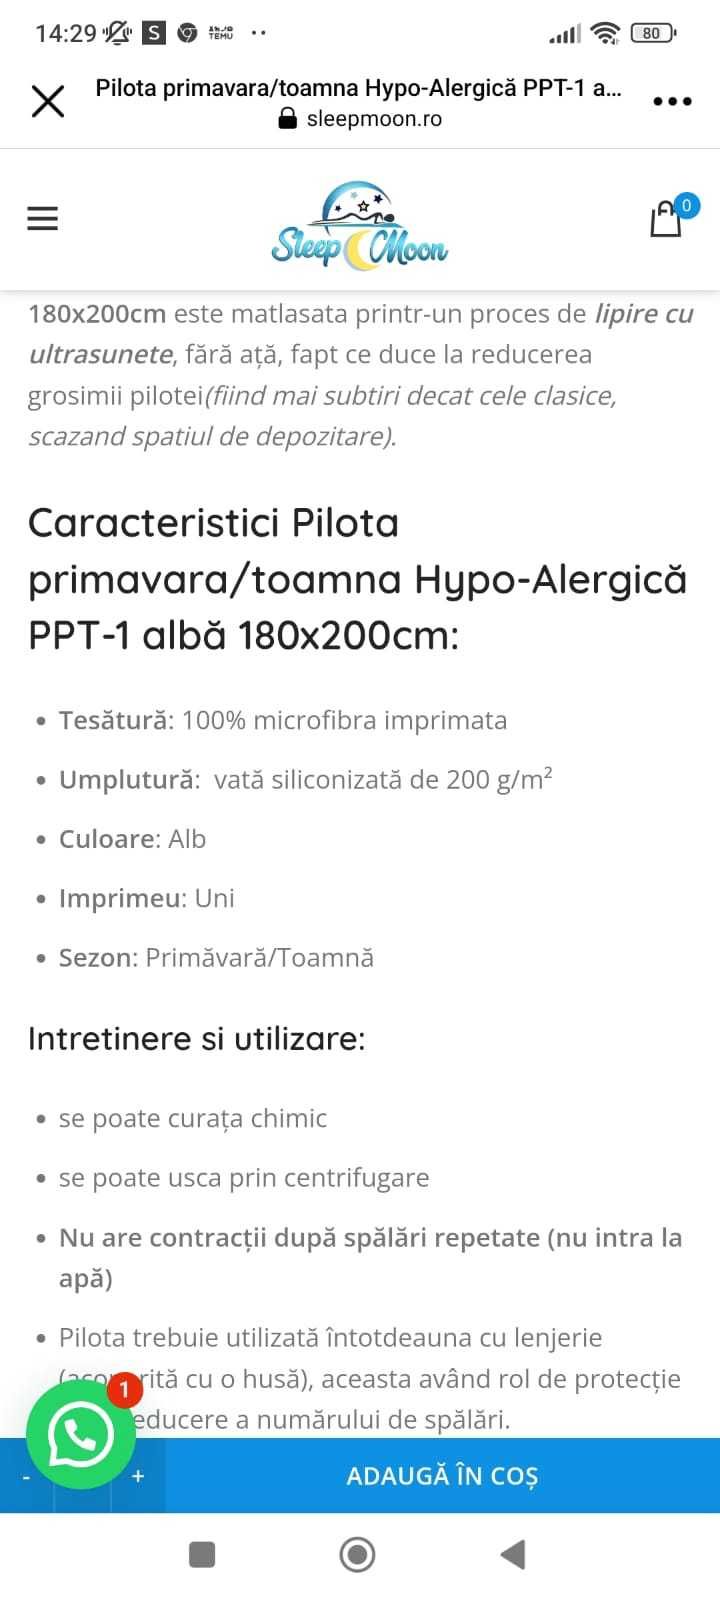 Pilota primavara/toamna Hypo-Alergică PPT-1 albă 180x200cm